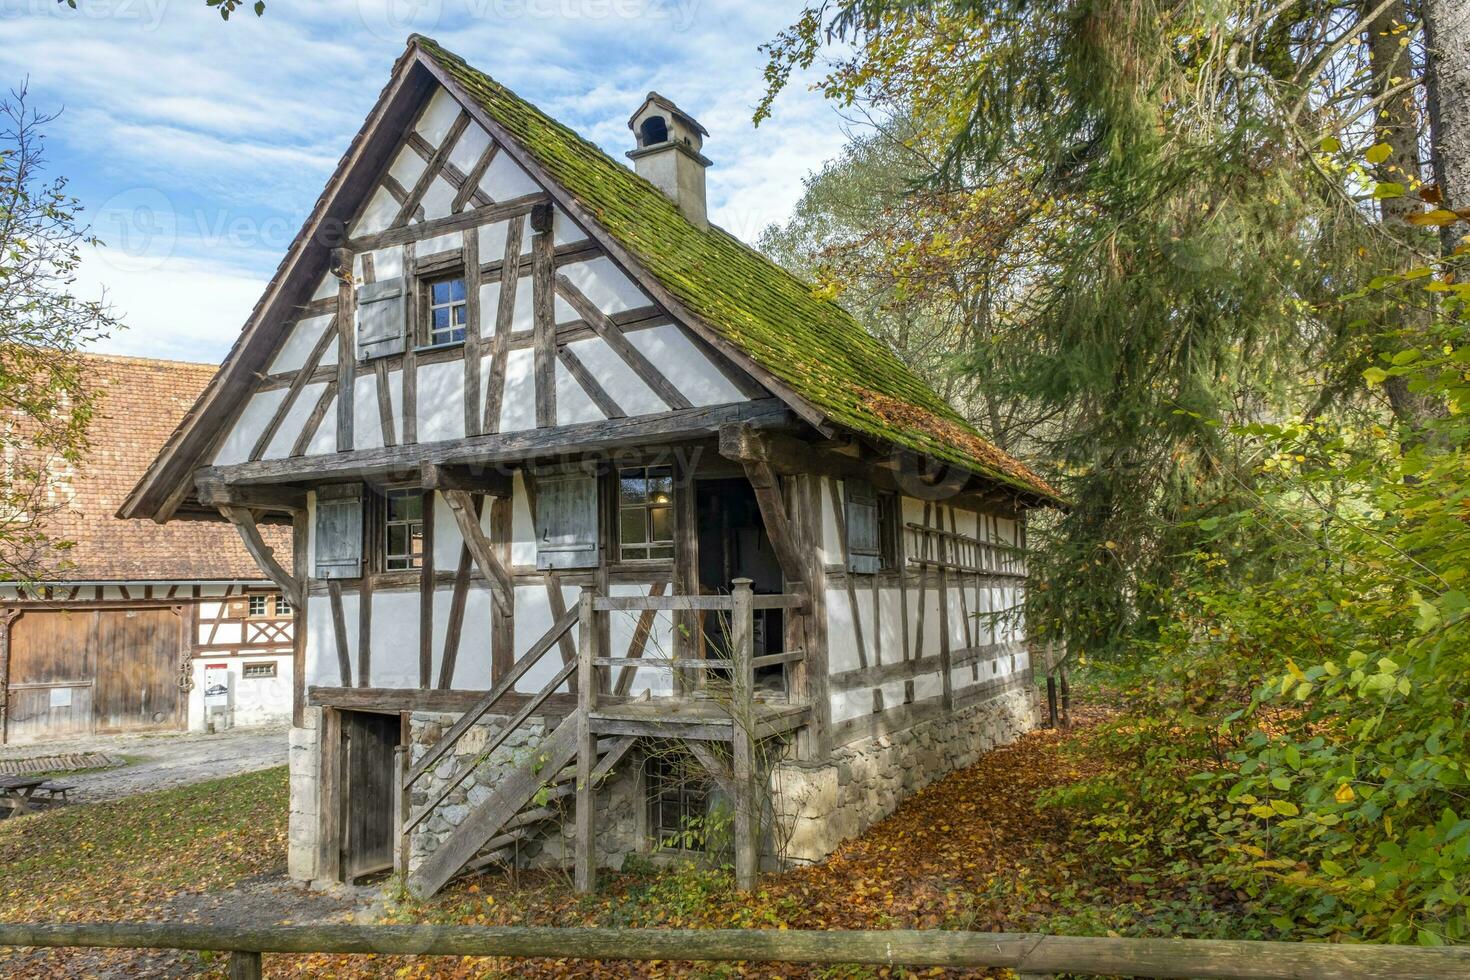 deze foto shows wonder vakwerk huizen in een boeren dorp in Duitsland